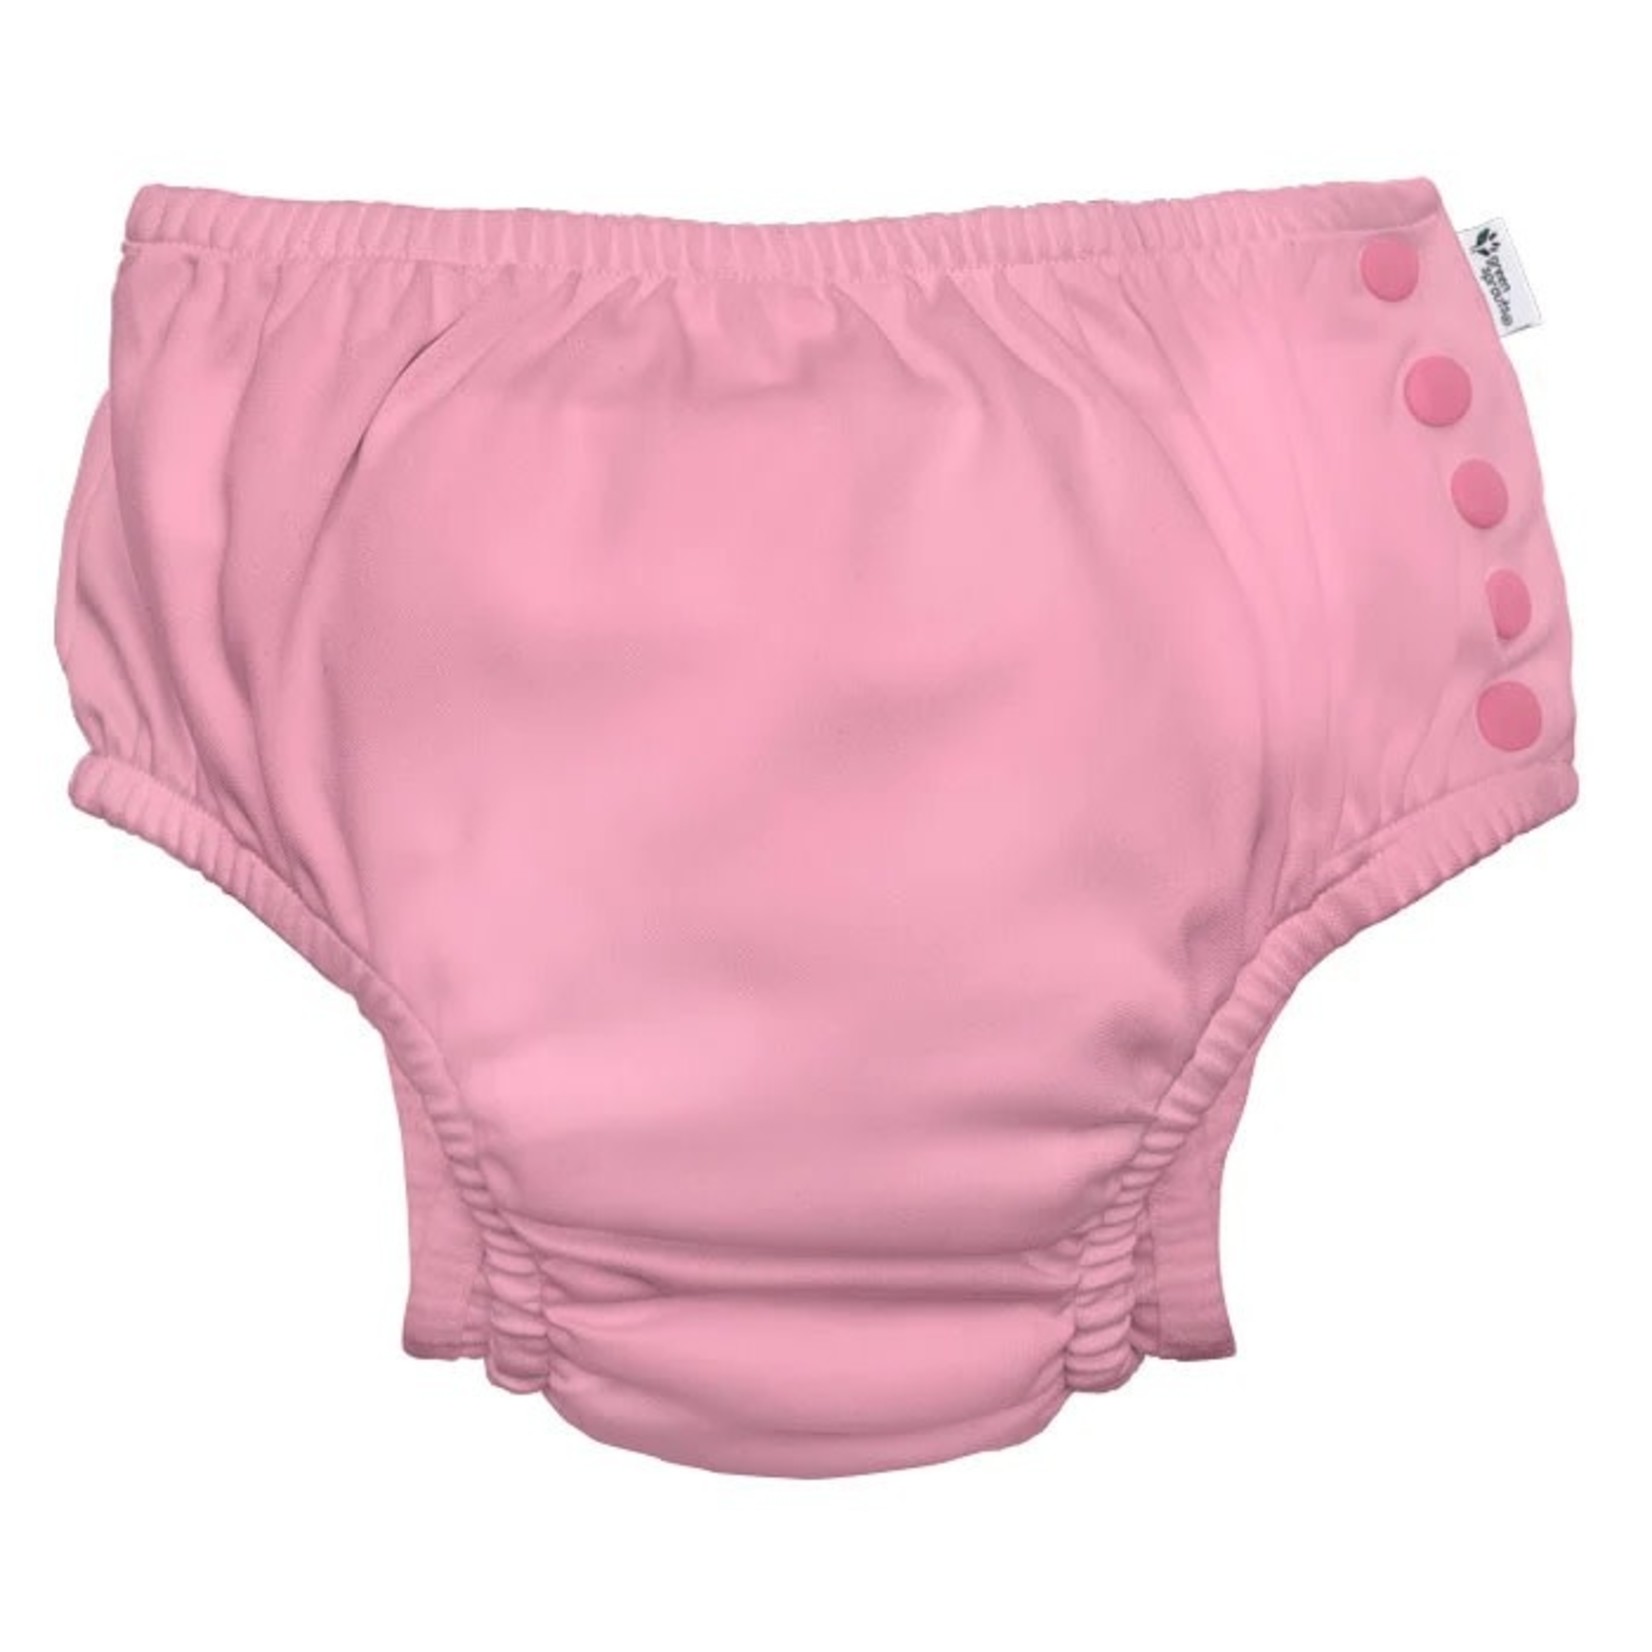 Pink Snap Swim Diaper